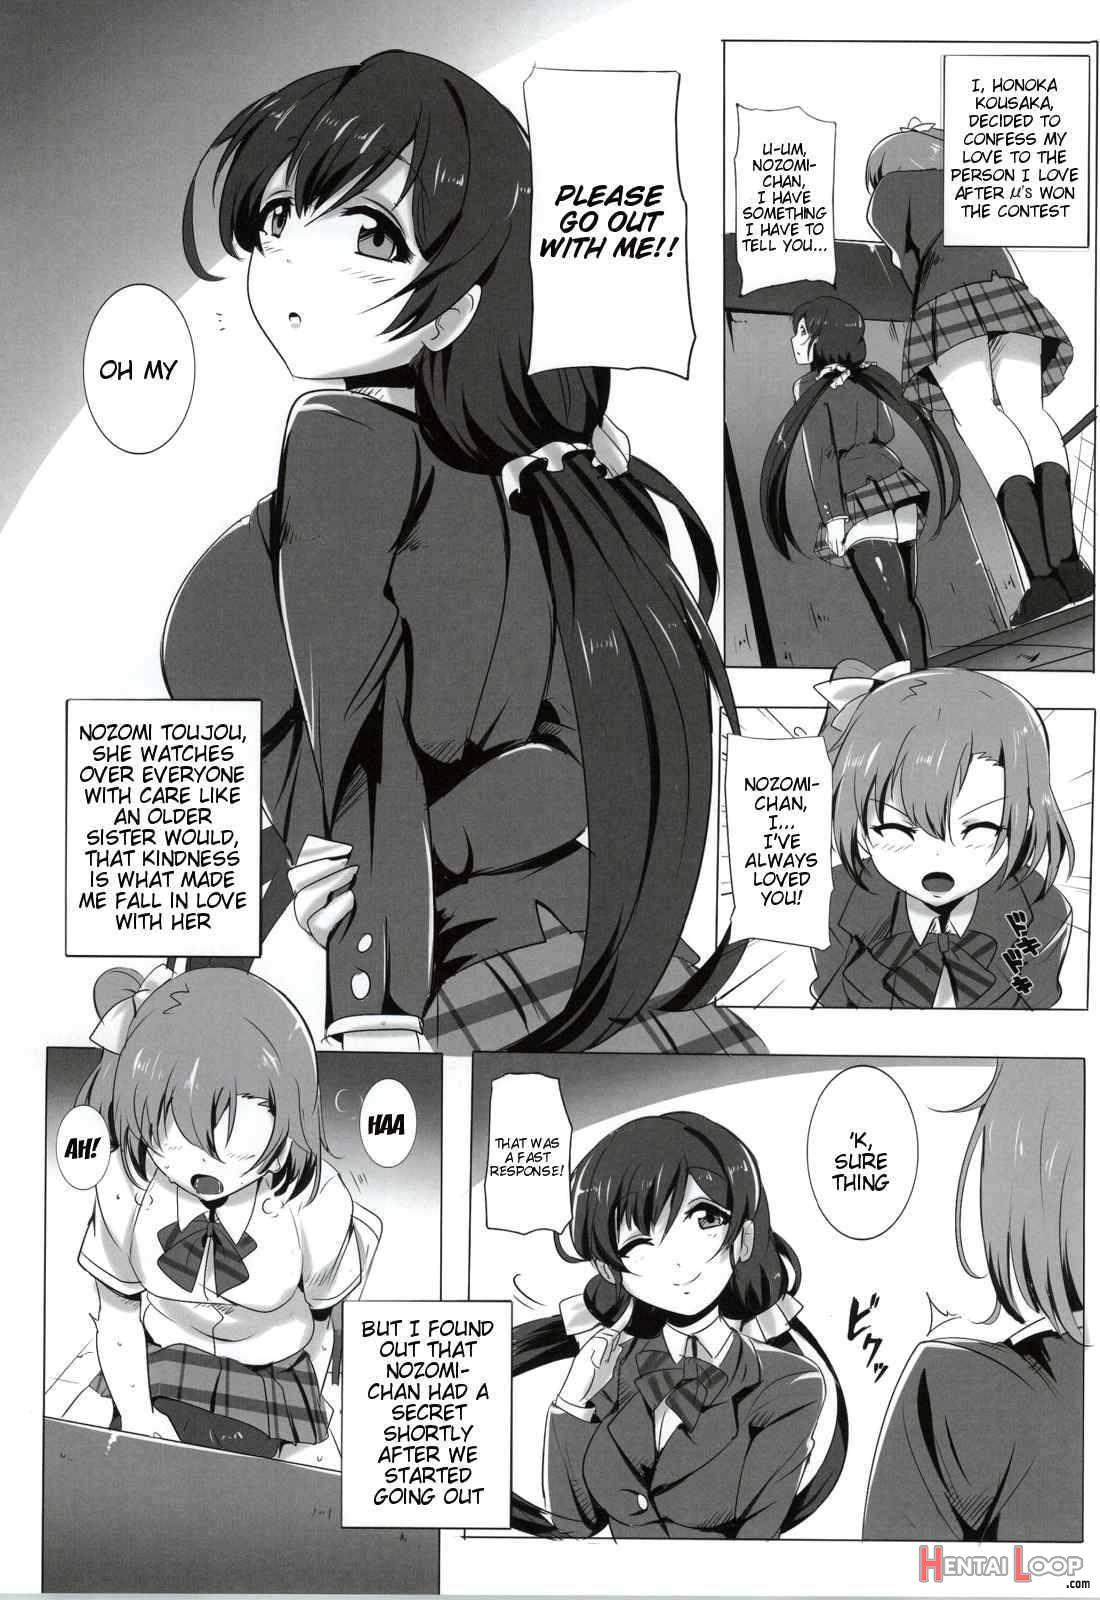 Honoka and Nozomi’s Sex Life page 2